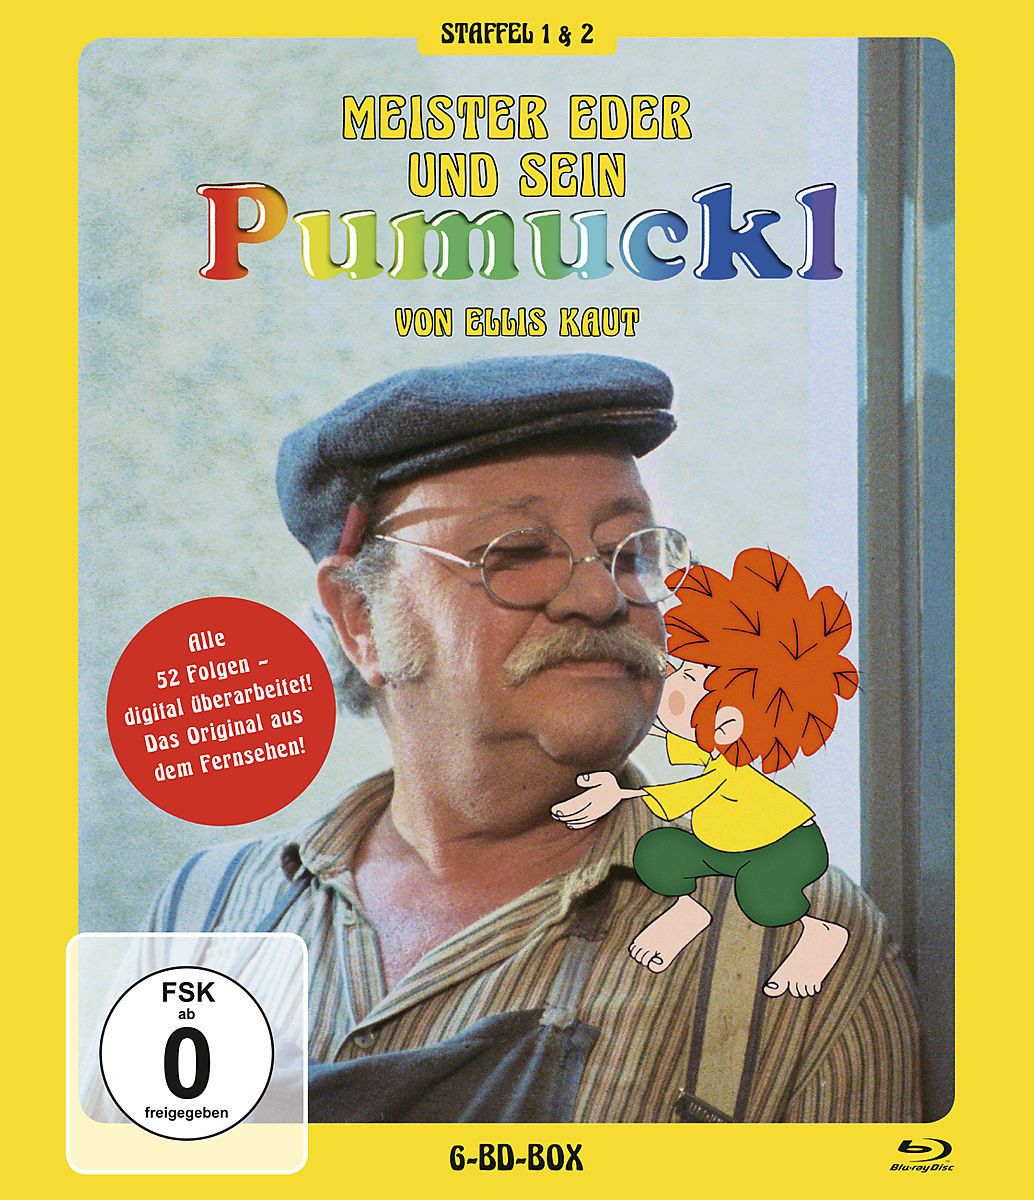 Pumuckl - Meister Eder und sein Pumuckl - Staffel 1+2 [6 BRs]' von 'Ellis ( Buch) Kaut' - 'Blu-ray